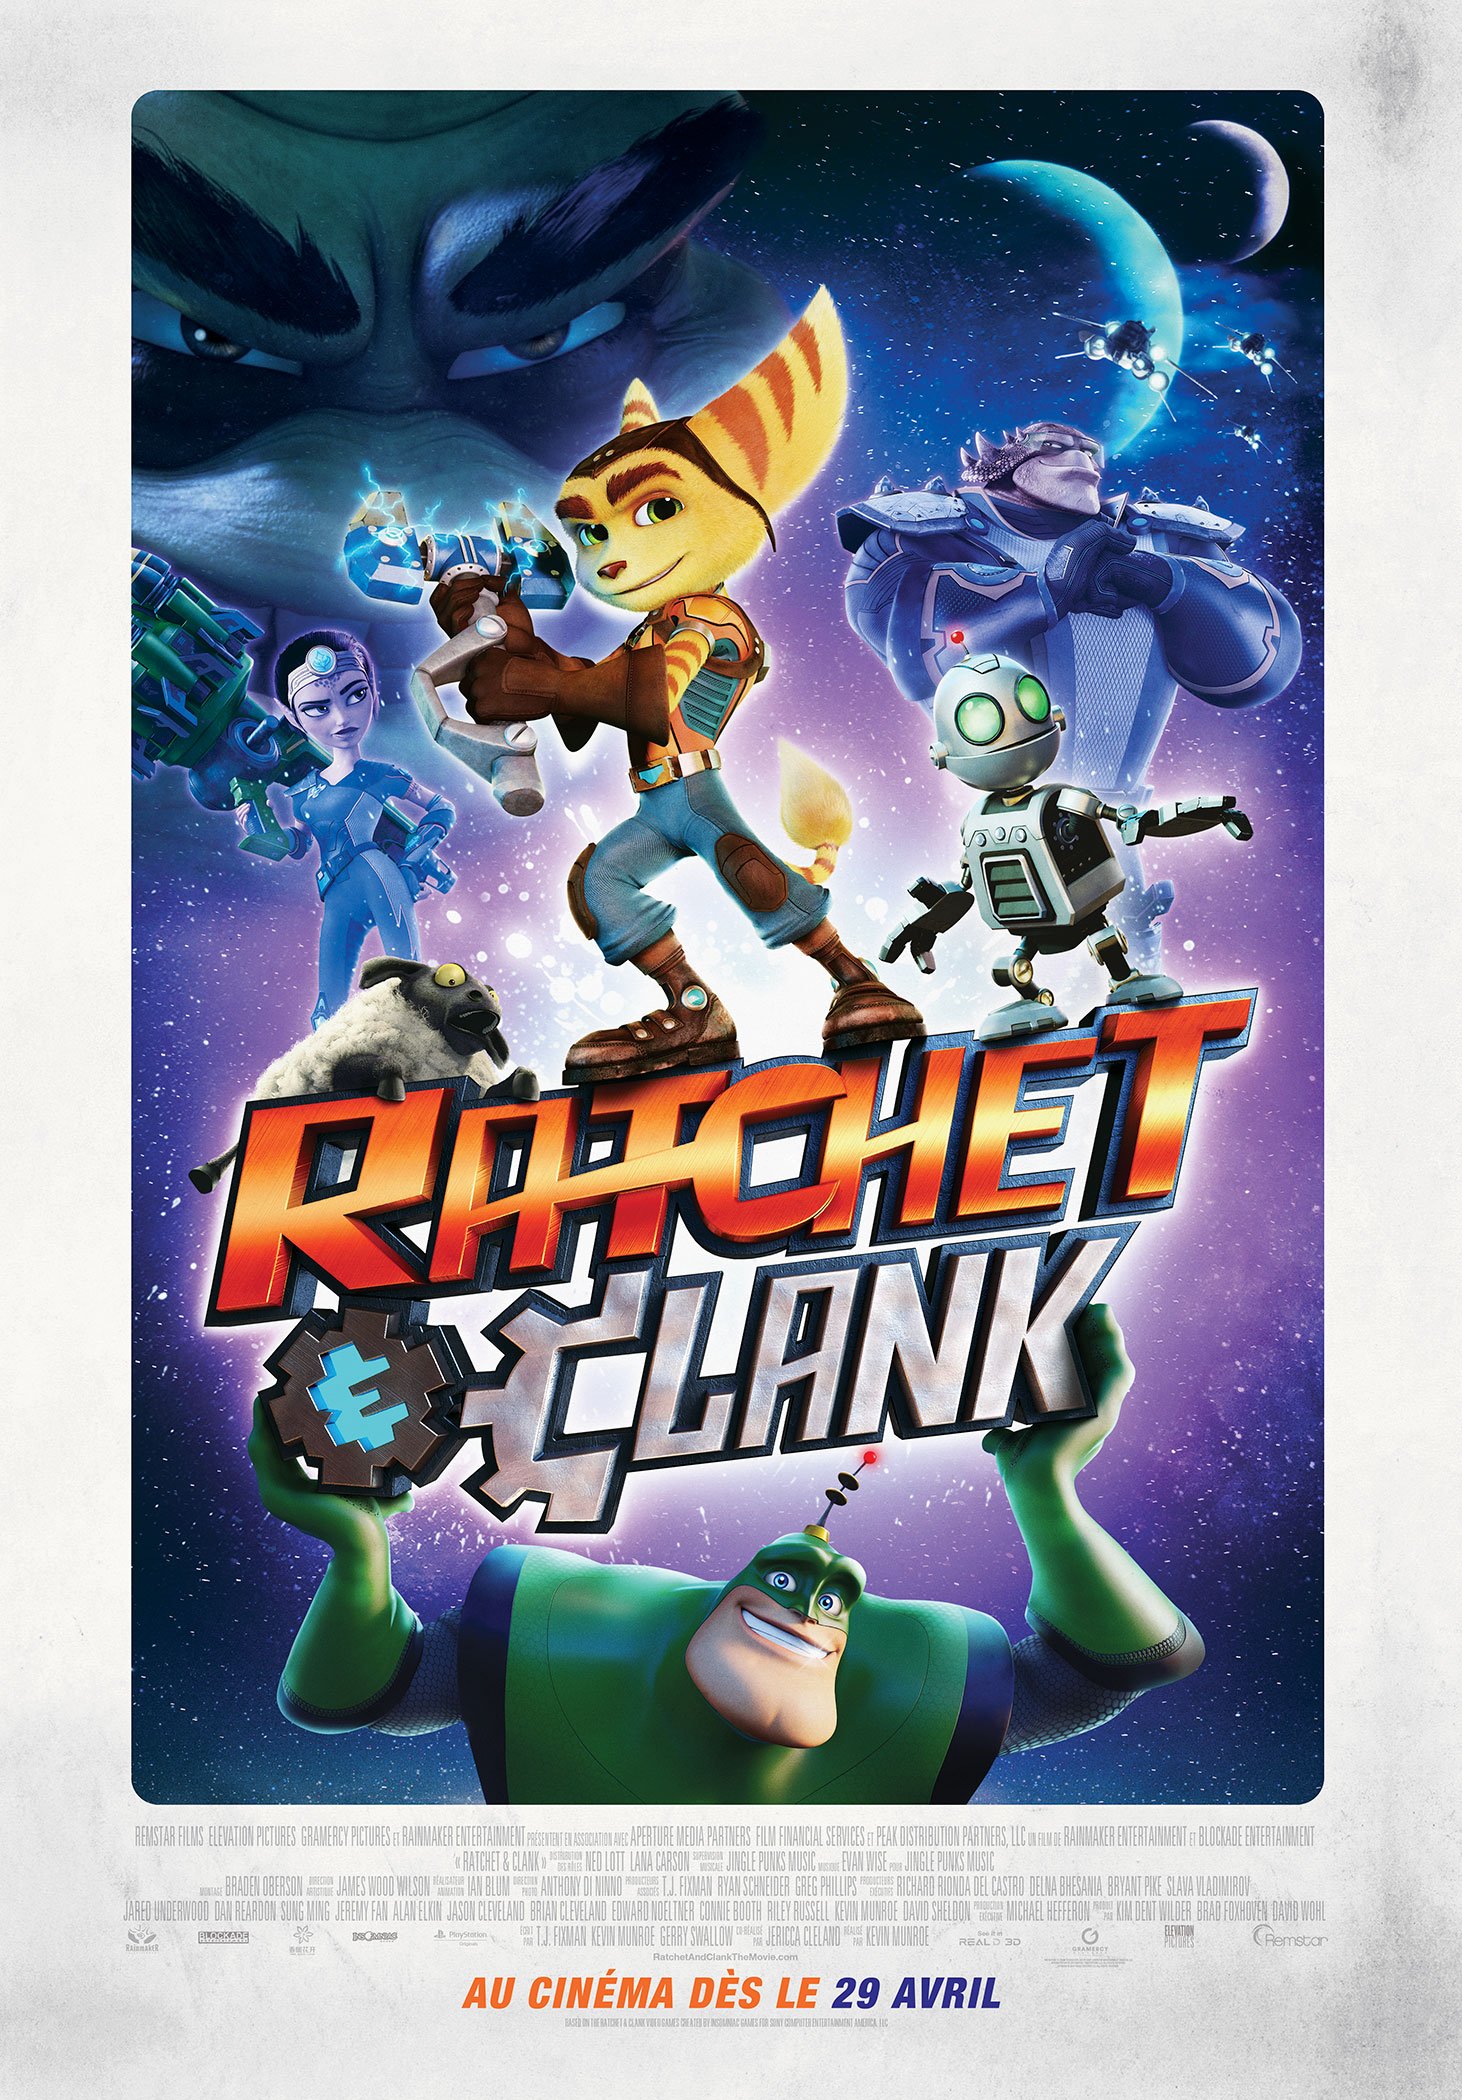 L'affiche du film Ratchet et Clank v.f.